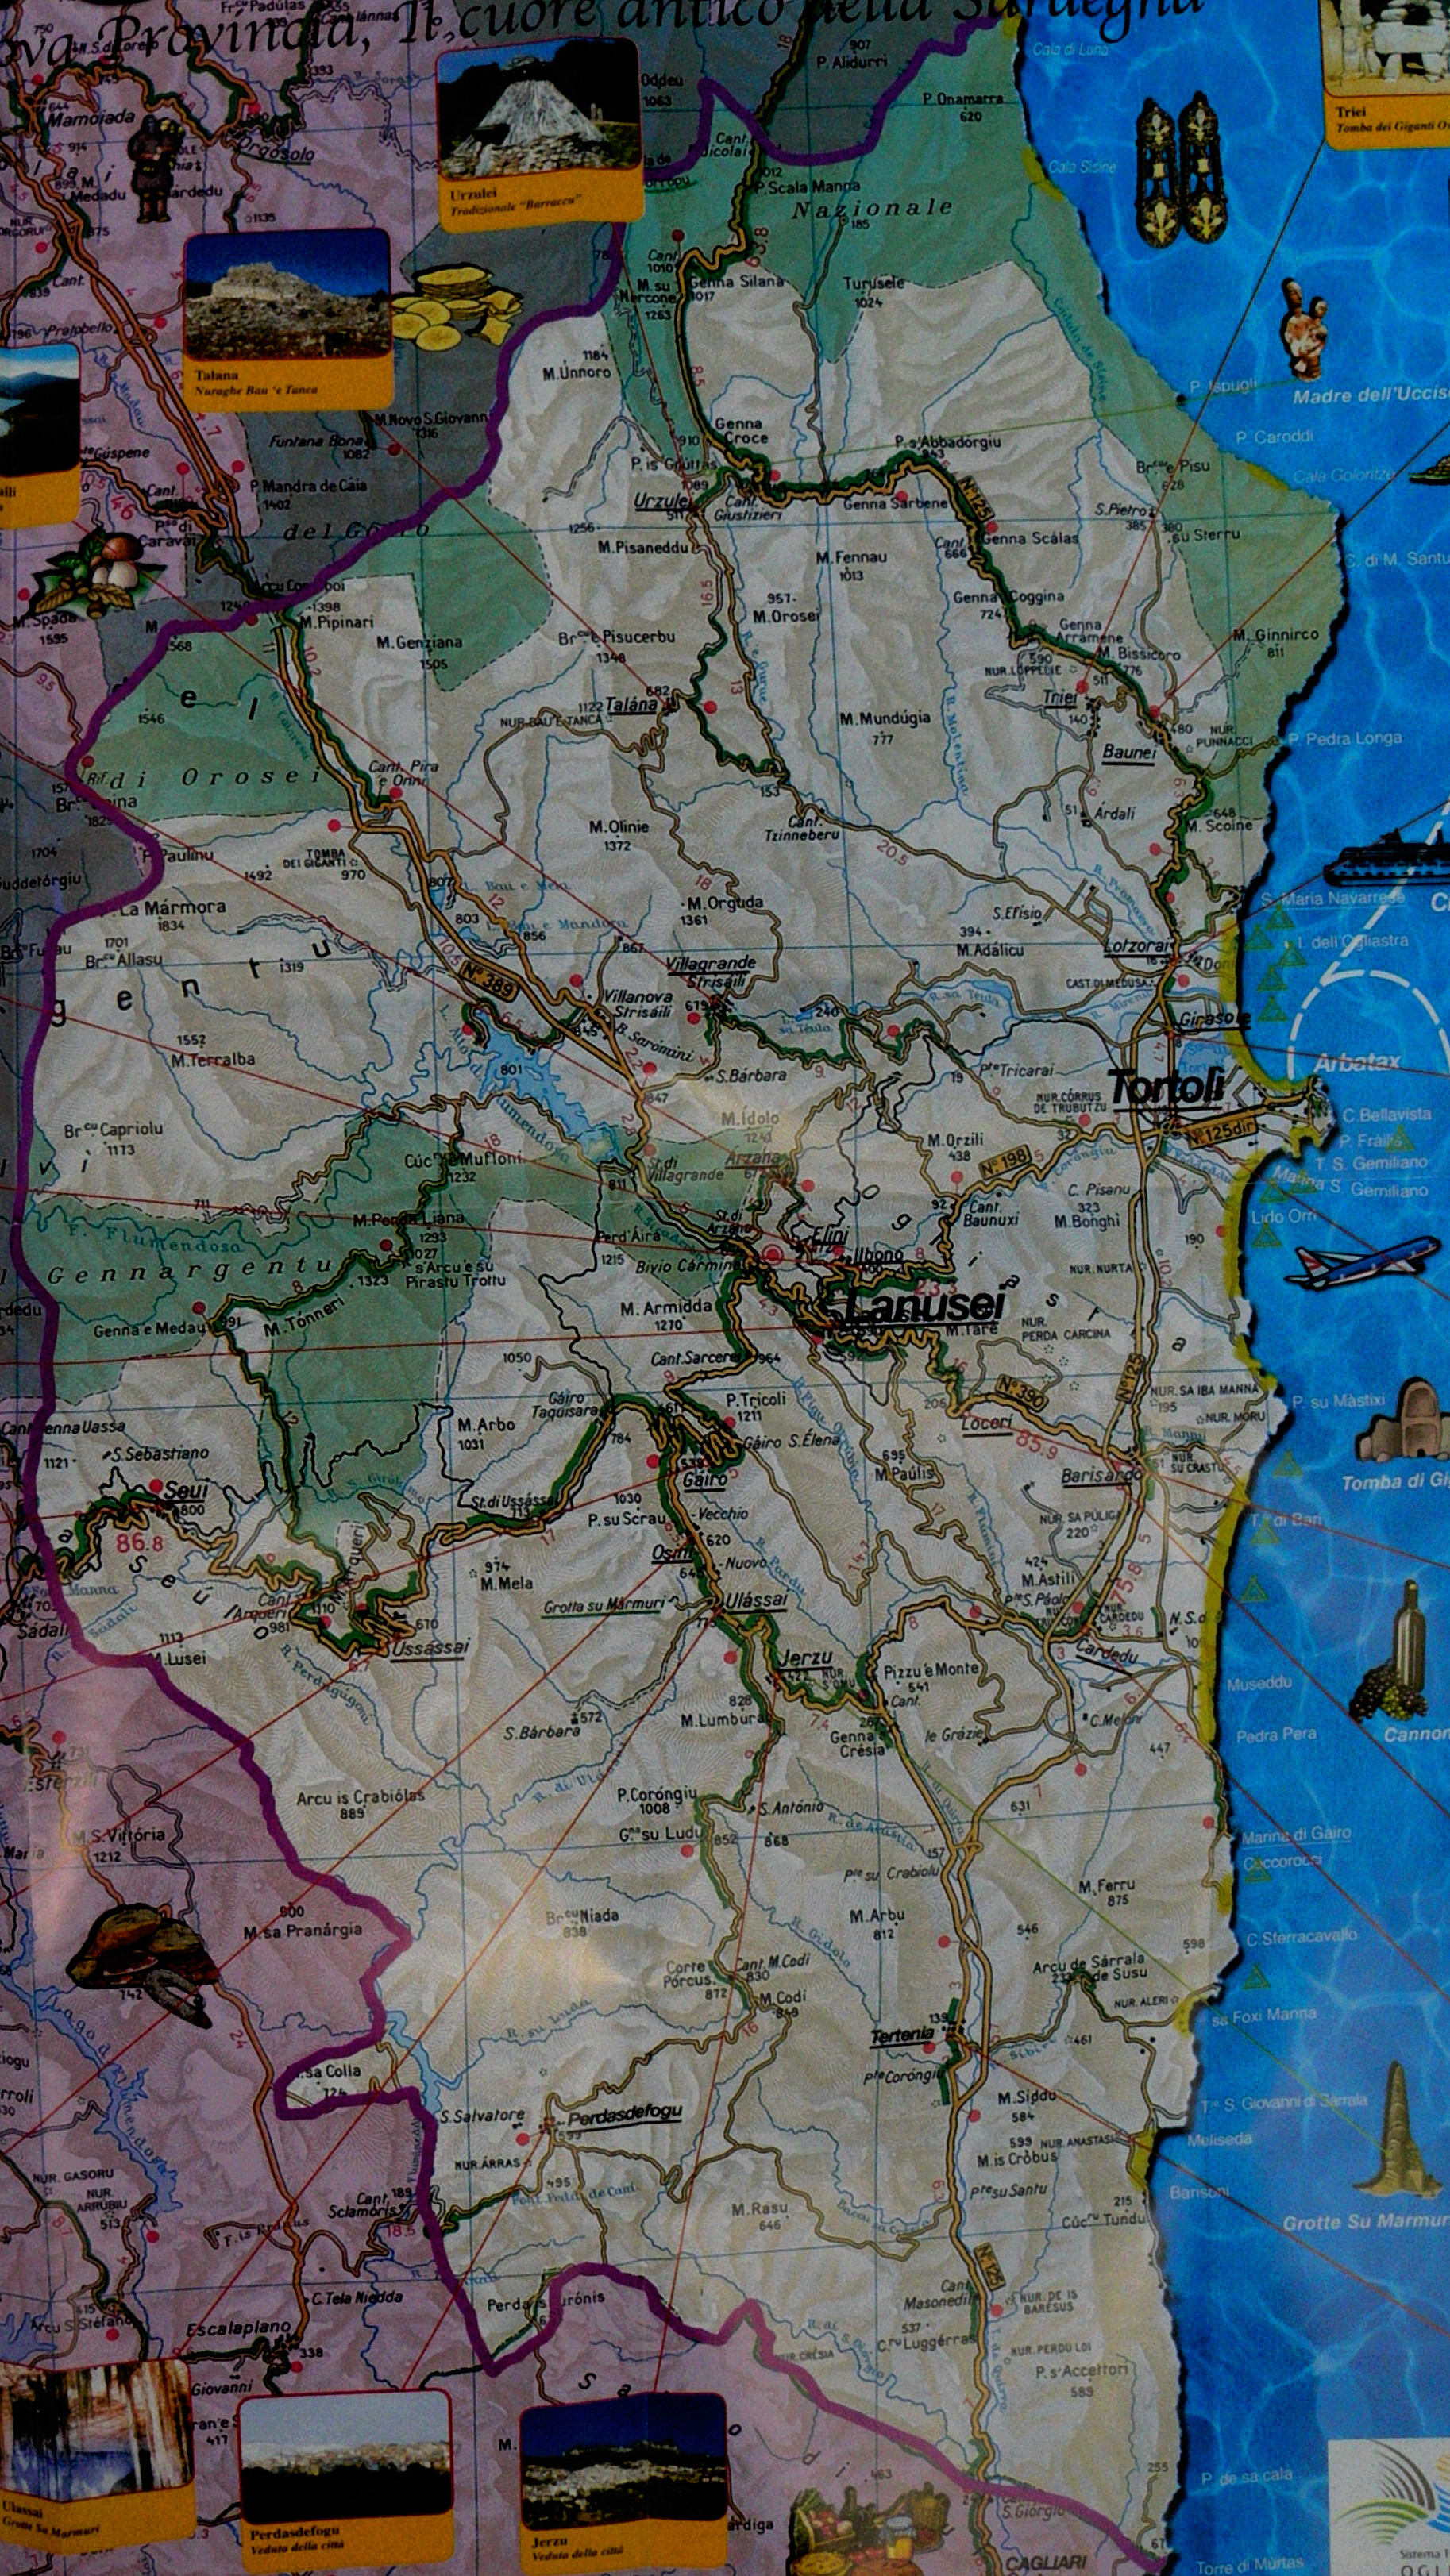 Map of ogliastra with Tortoli and marina di Gairo